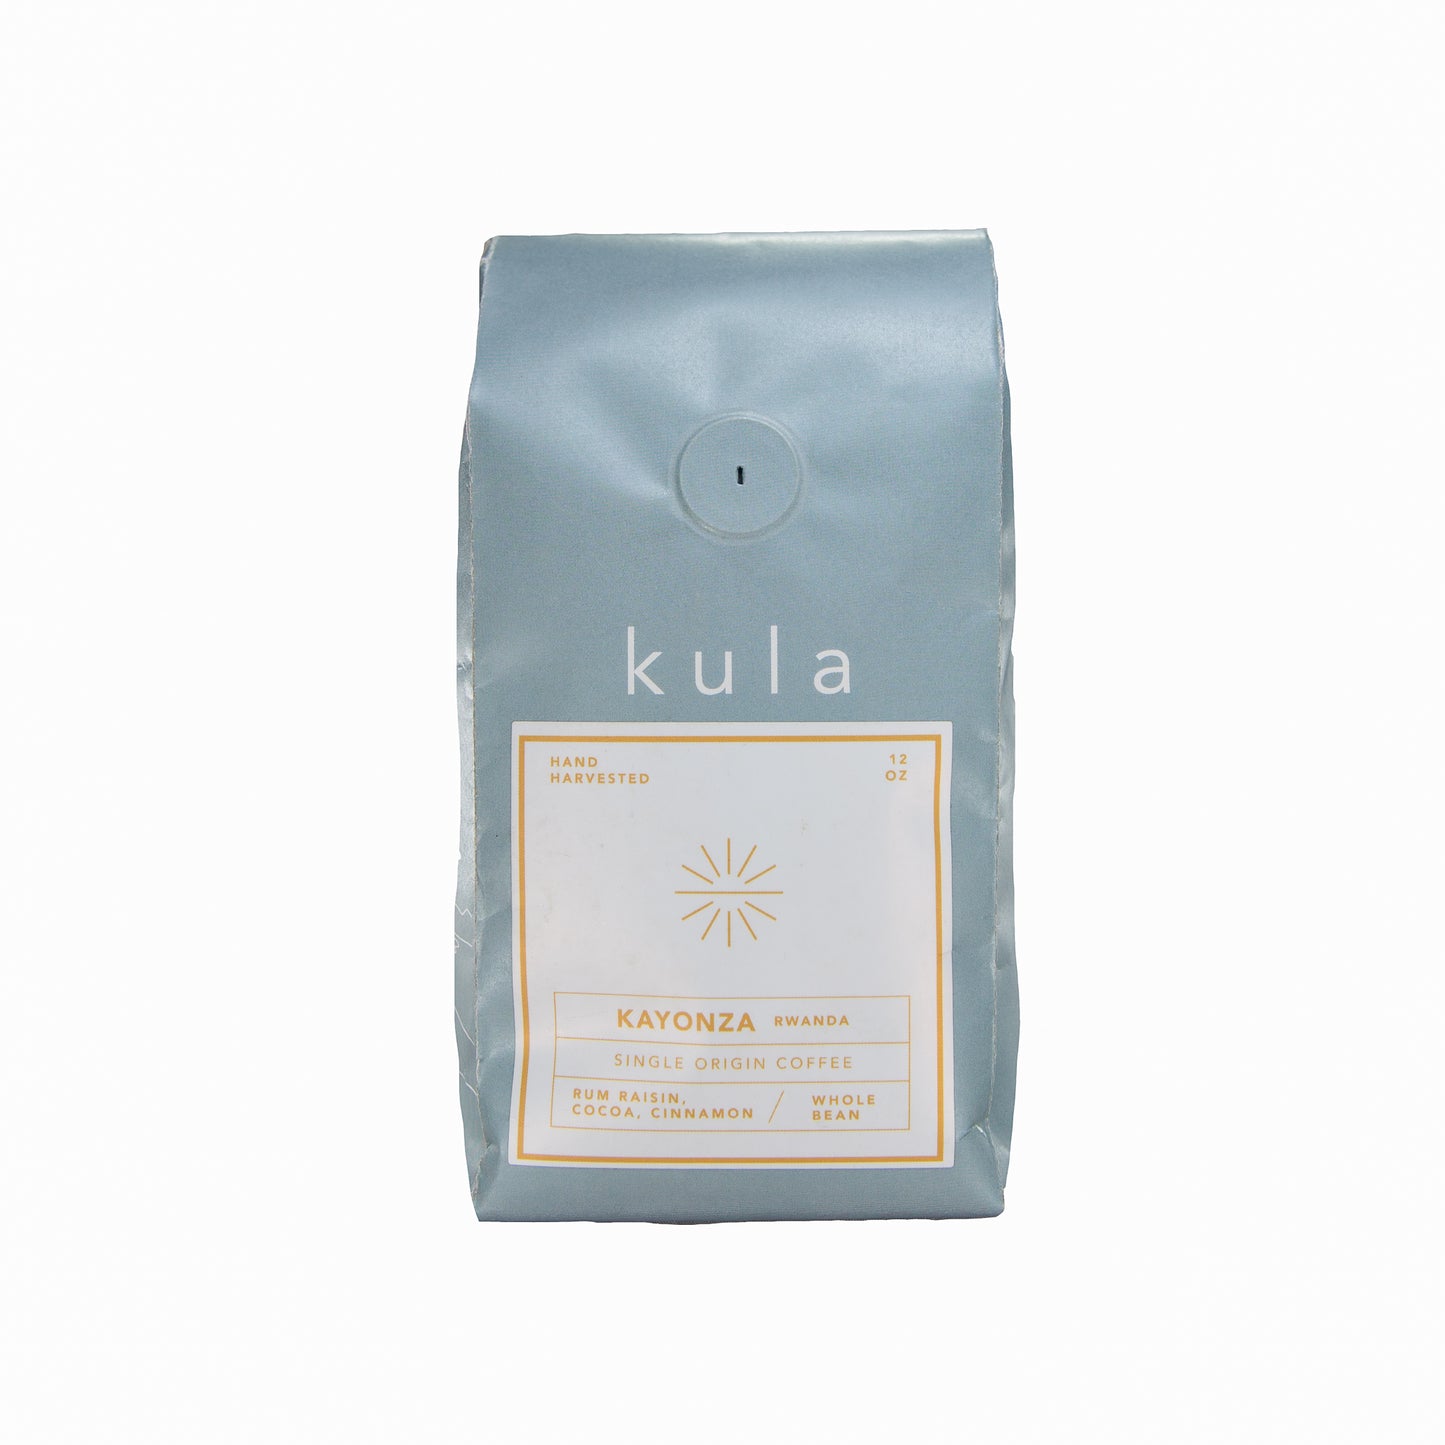 KULA COFFEE: KAYONZA